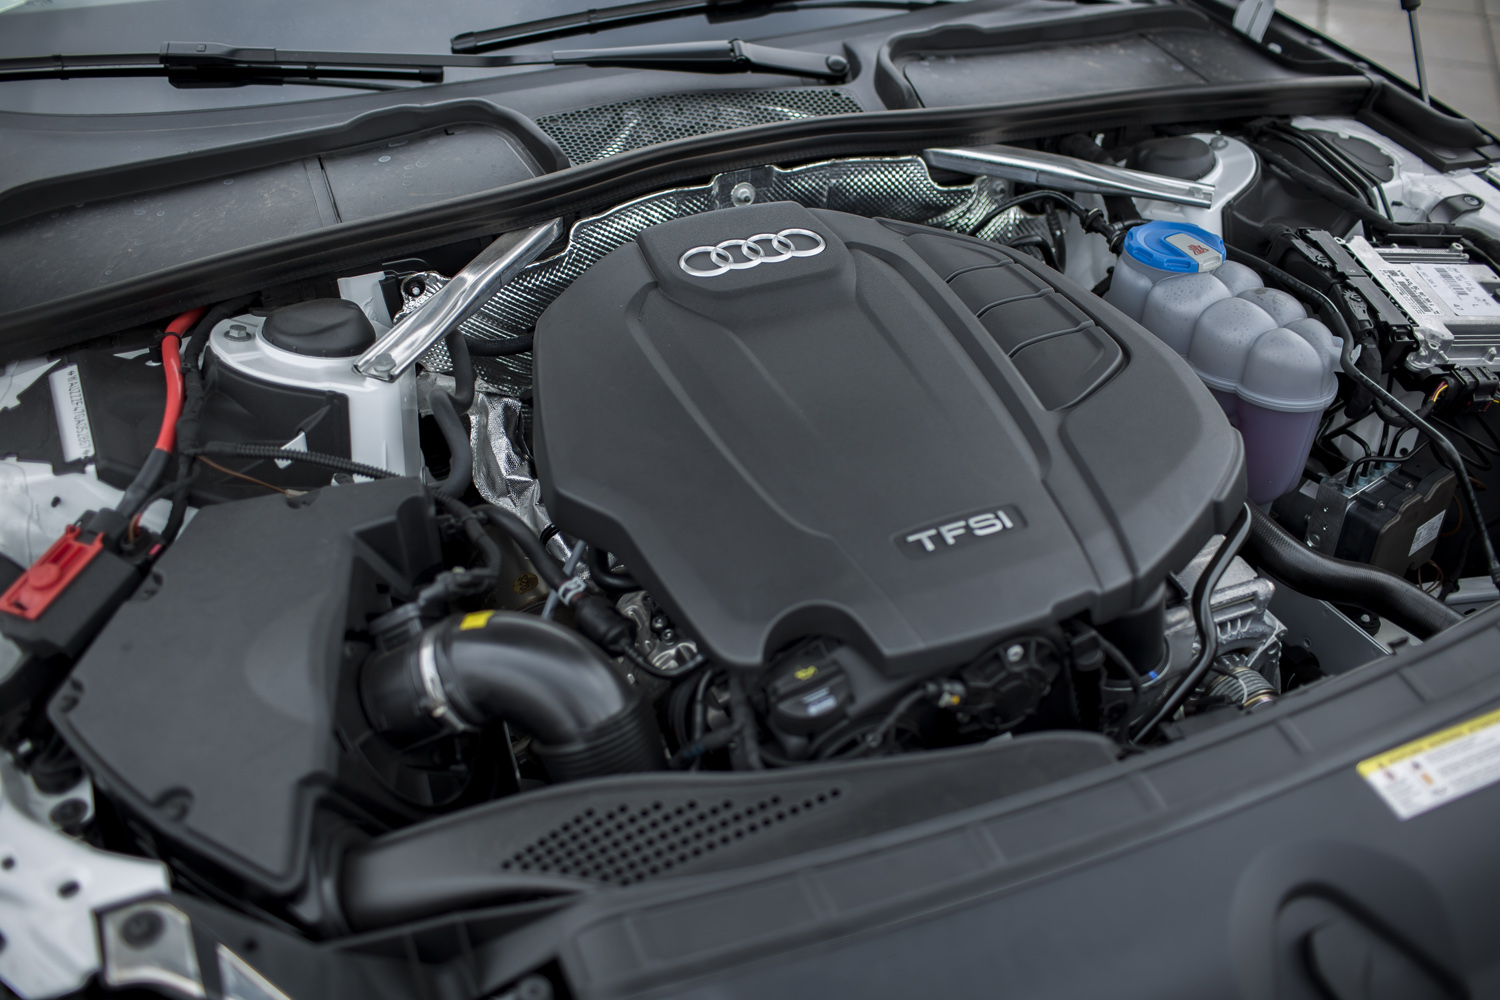 
Bên dưới nắp ca-pô của Audi A4 thế hệ mới là khối động cơ TFSI 2.0 mới với công suất 190 mã lực và mo-men xoắn 320 Nm toàn dải từ 1.450 - 4.200 vòng/phút. So với động cơ 1.8 TFSI của phiên bản A4 trước đó, mức tiêu thụ nhiên liệu của động cơ 2.0 TFSI đã giảm 16% xuống còn 4,9 lít cho 100 km, trong khi công suất tăng 12%.
